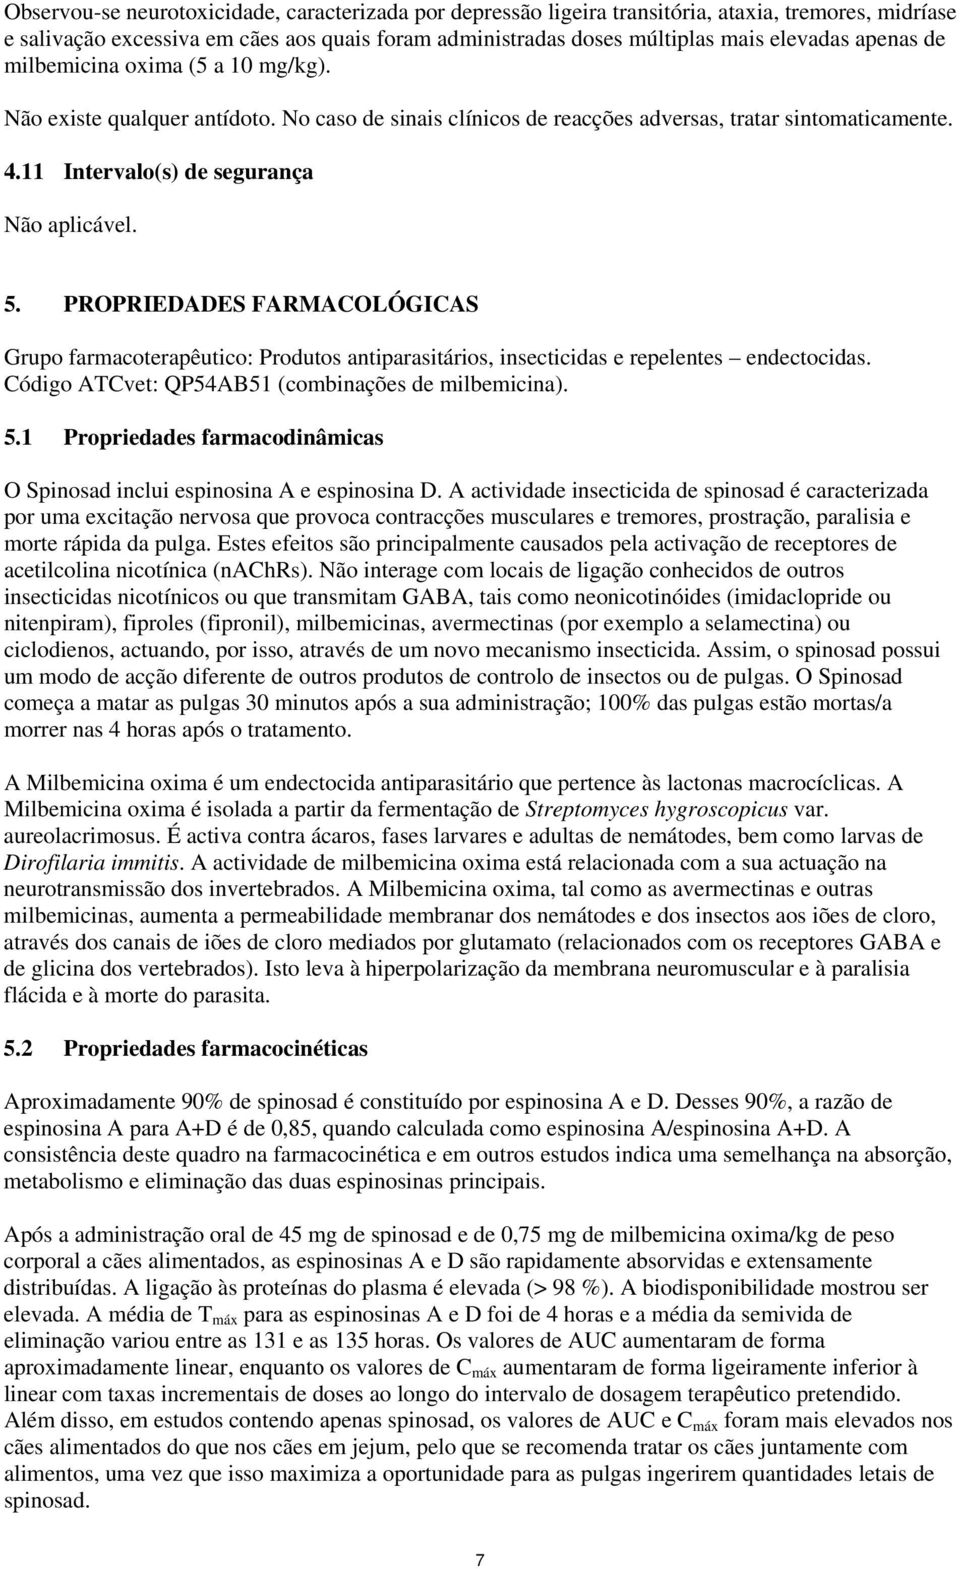 PROPRIEDADES FARMACOLÓGICAS Grupo farmacoterapêutico: Produtos antiparasitários, insecticidas e repelentes endectocidas. Código ATCvet: QP54AB51 (combinações de milbemicina). 5.